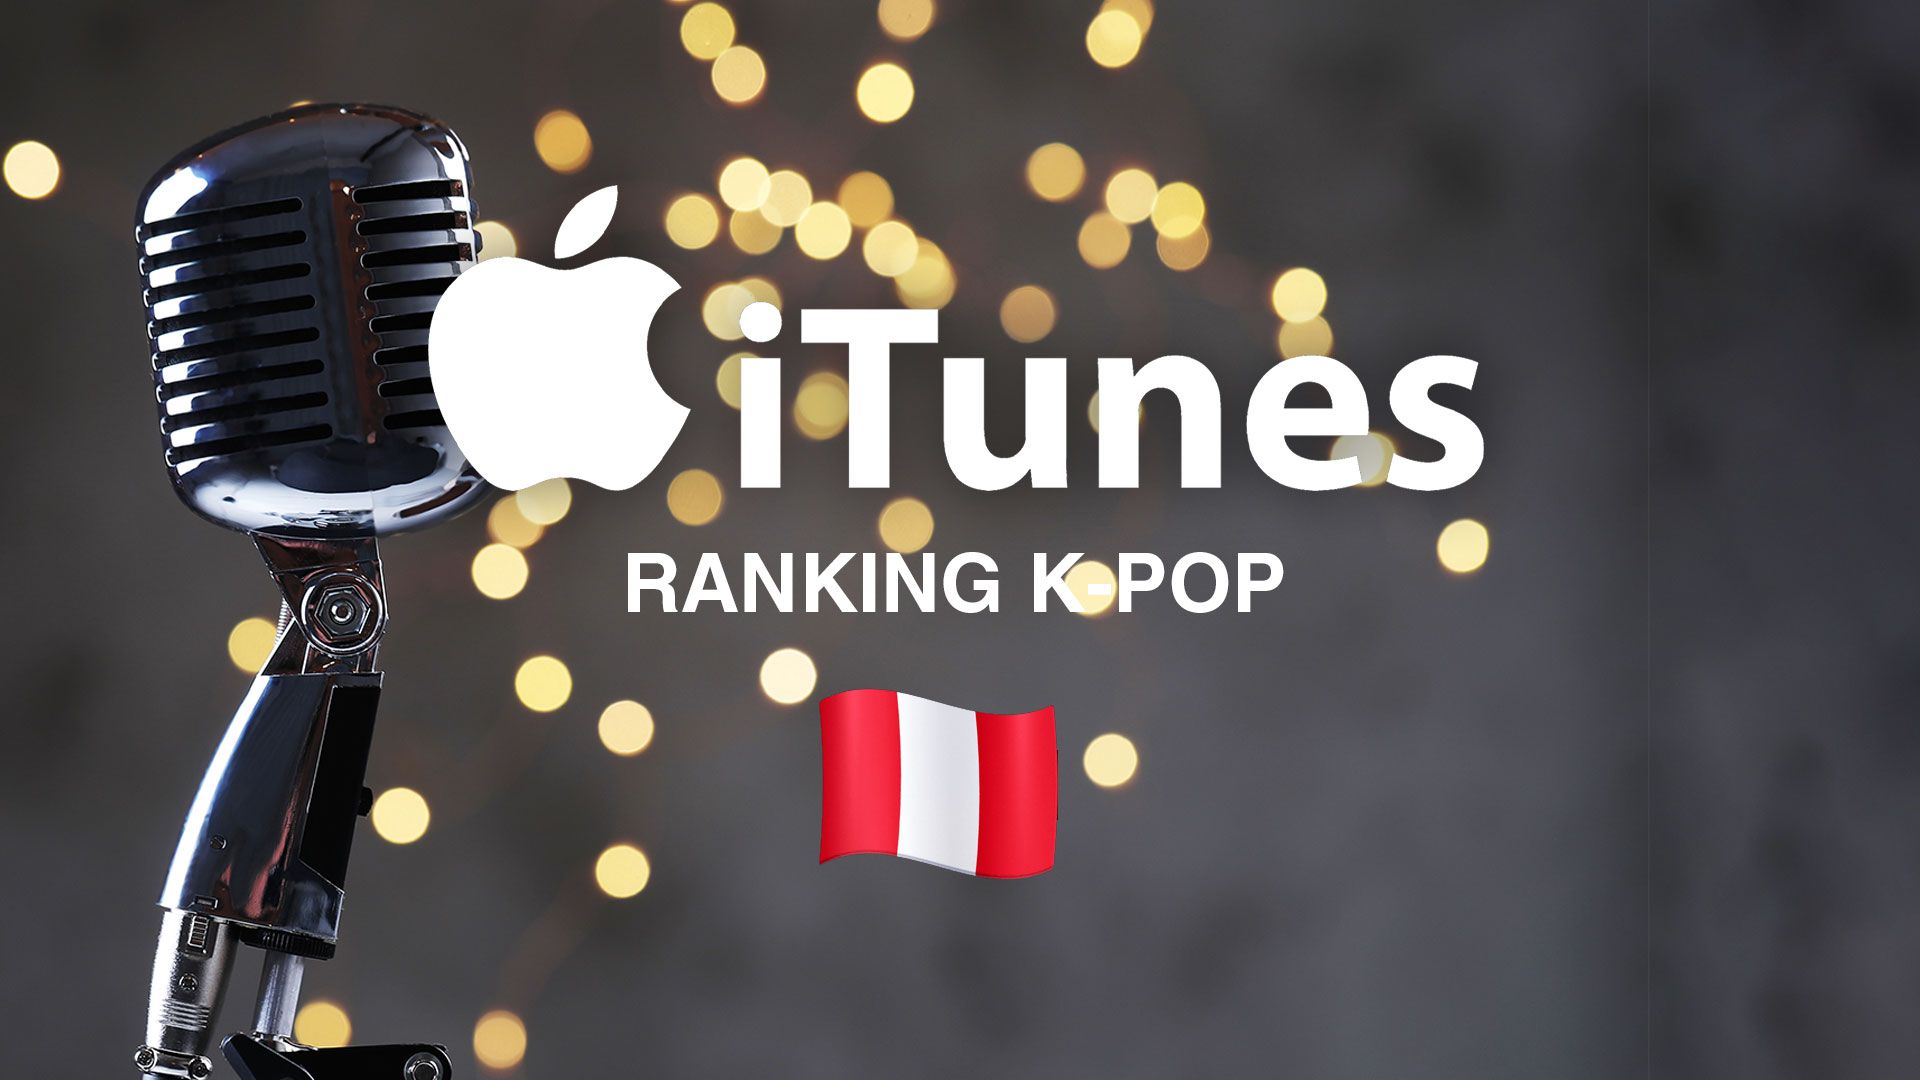 Canciones de K-pop en iTunes Perú para escuchar hoy